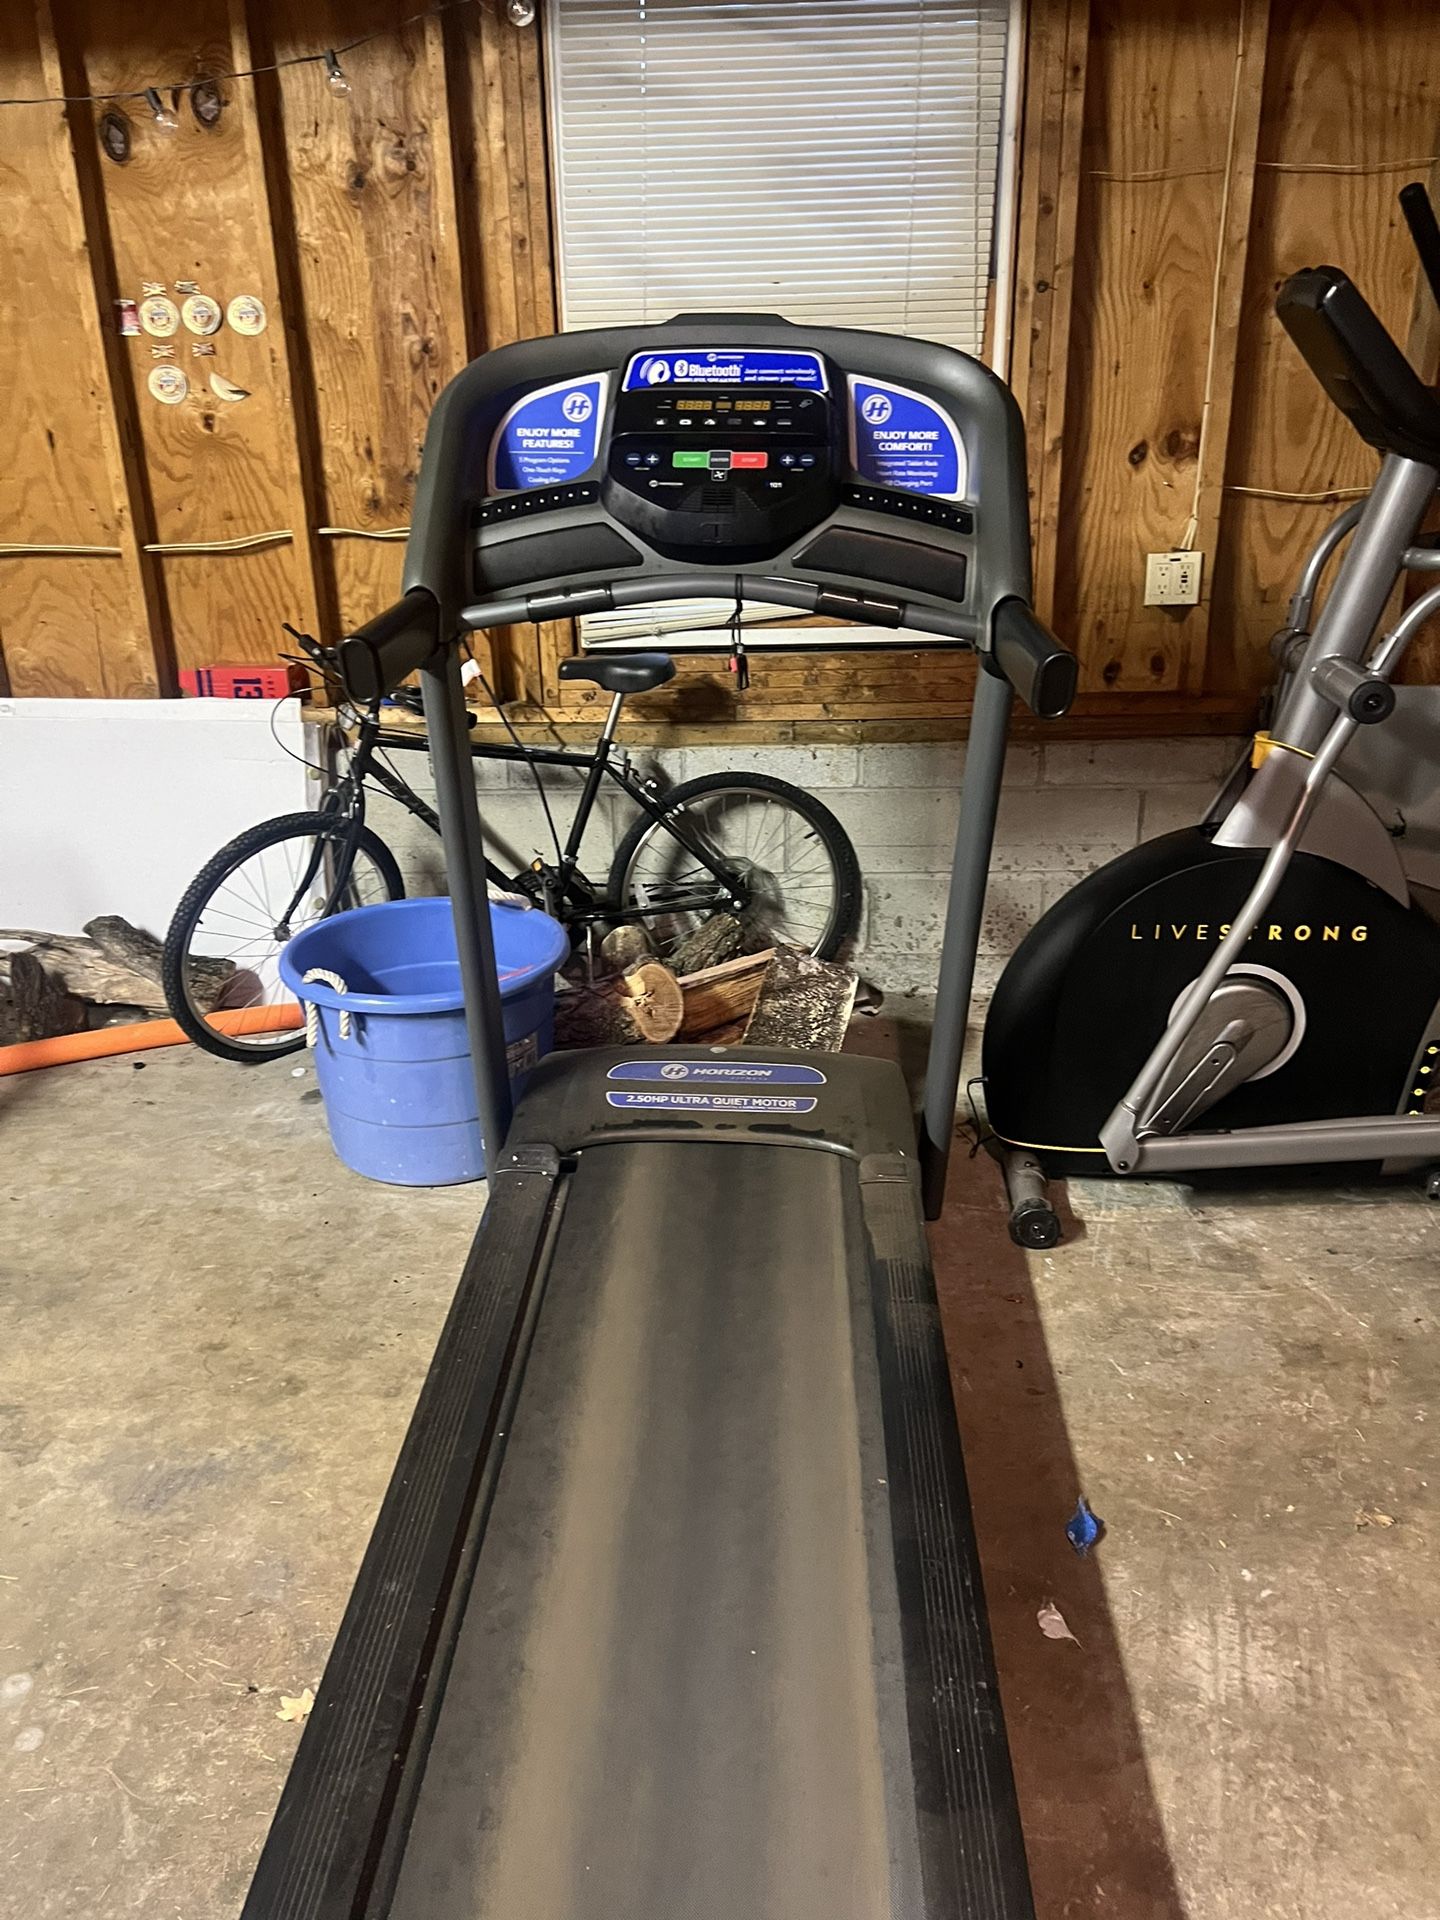 treadmill 